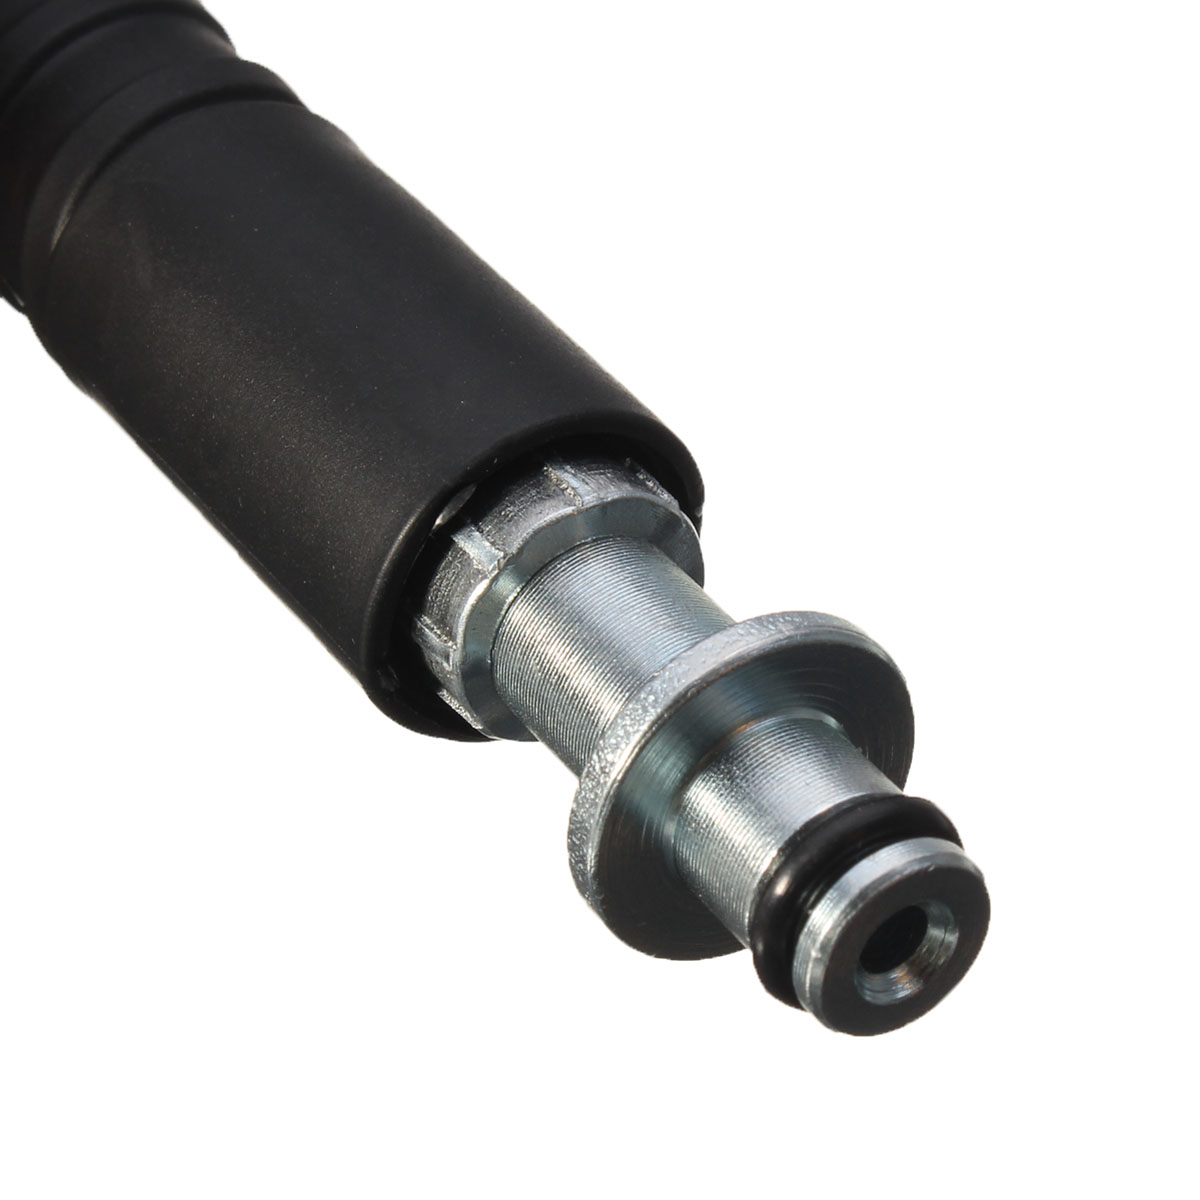 5M-5800PSI-Pressure-Washer-Hose-22mm-Pump-End-Fitting-for-Karcher-K2-Cleaner-1299990-7